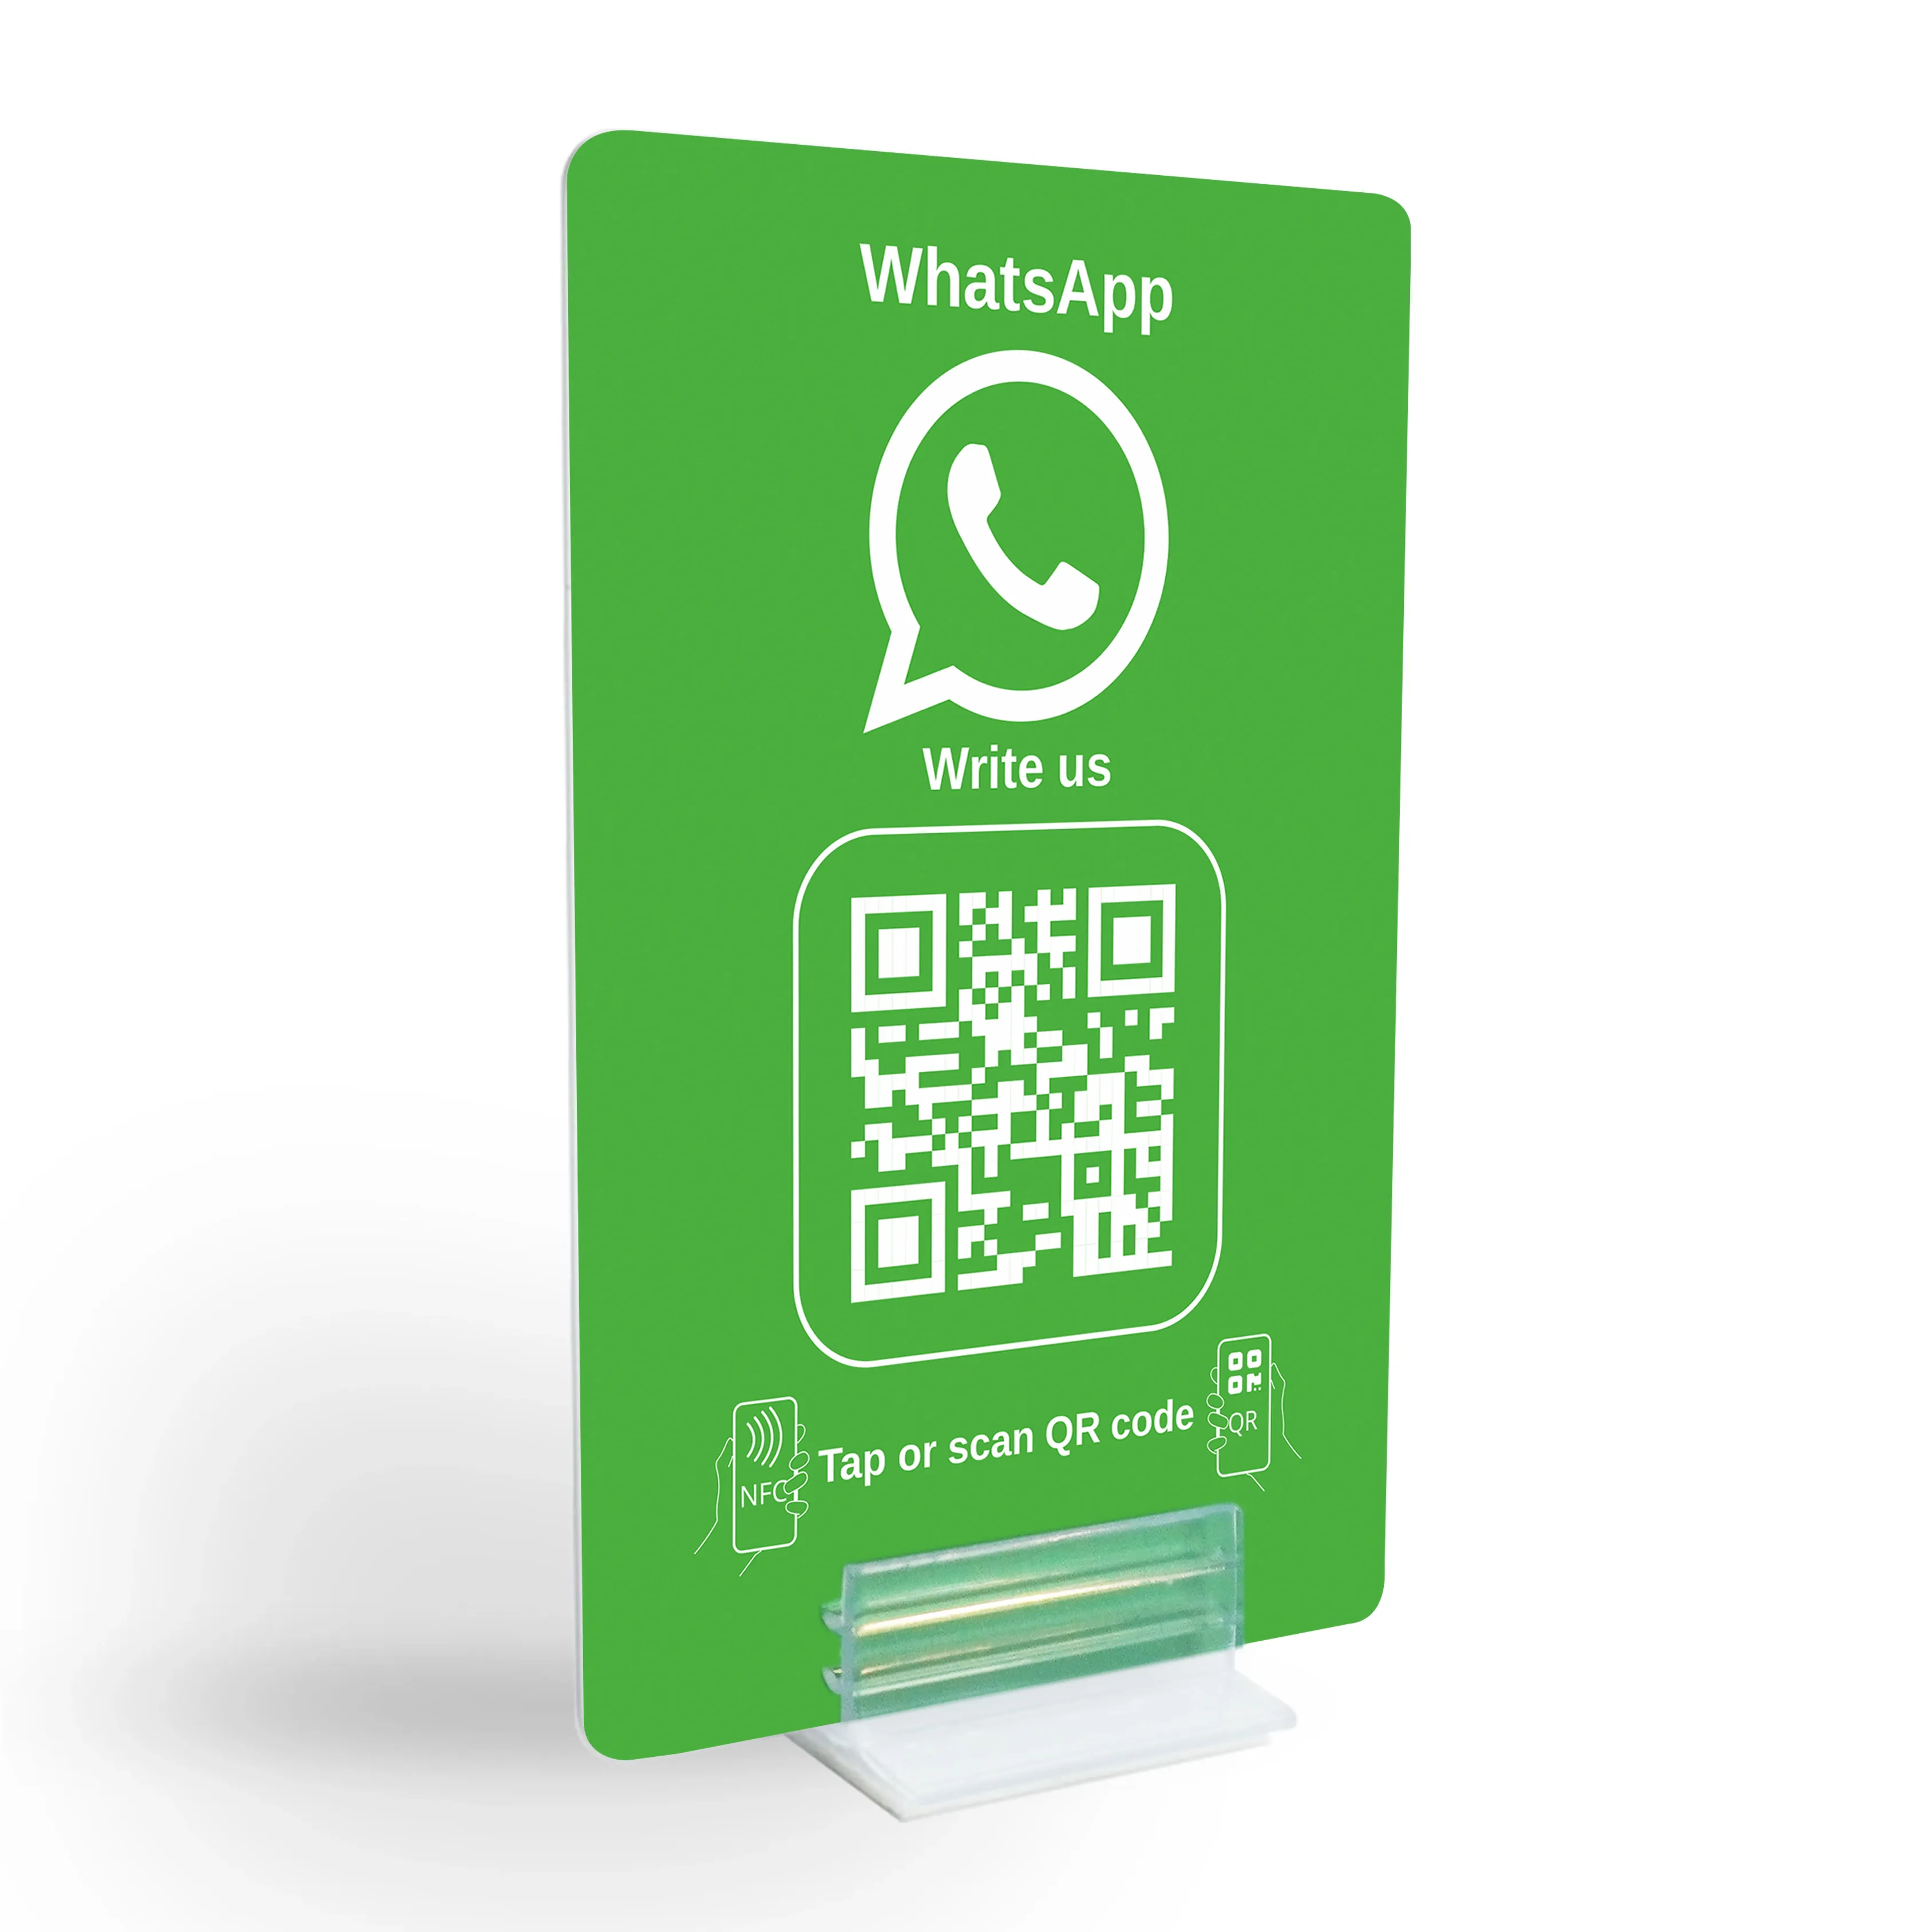 WhatsApp Direct Connect: pantalla con código NFC/QR para contactar al instante con el cliente